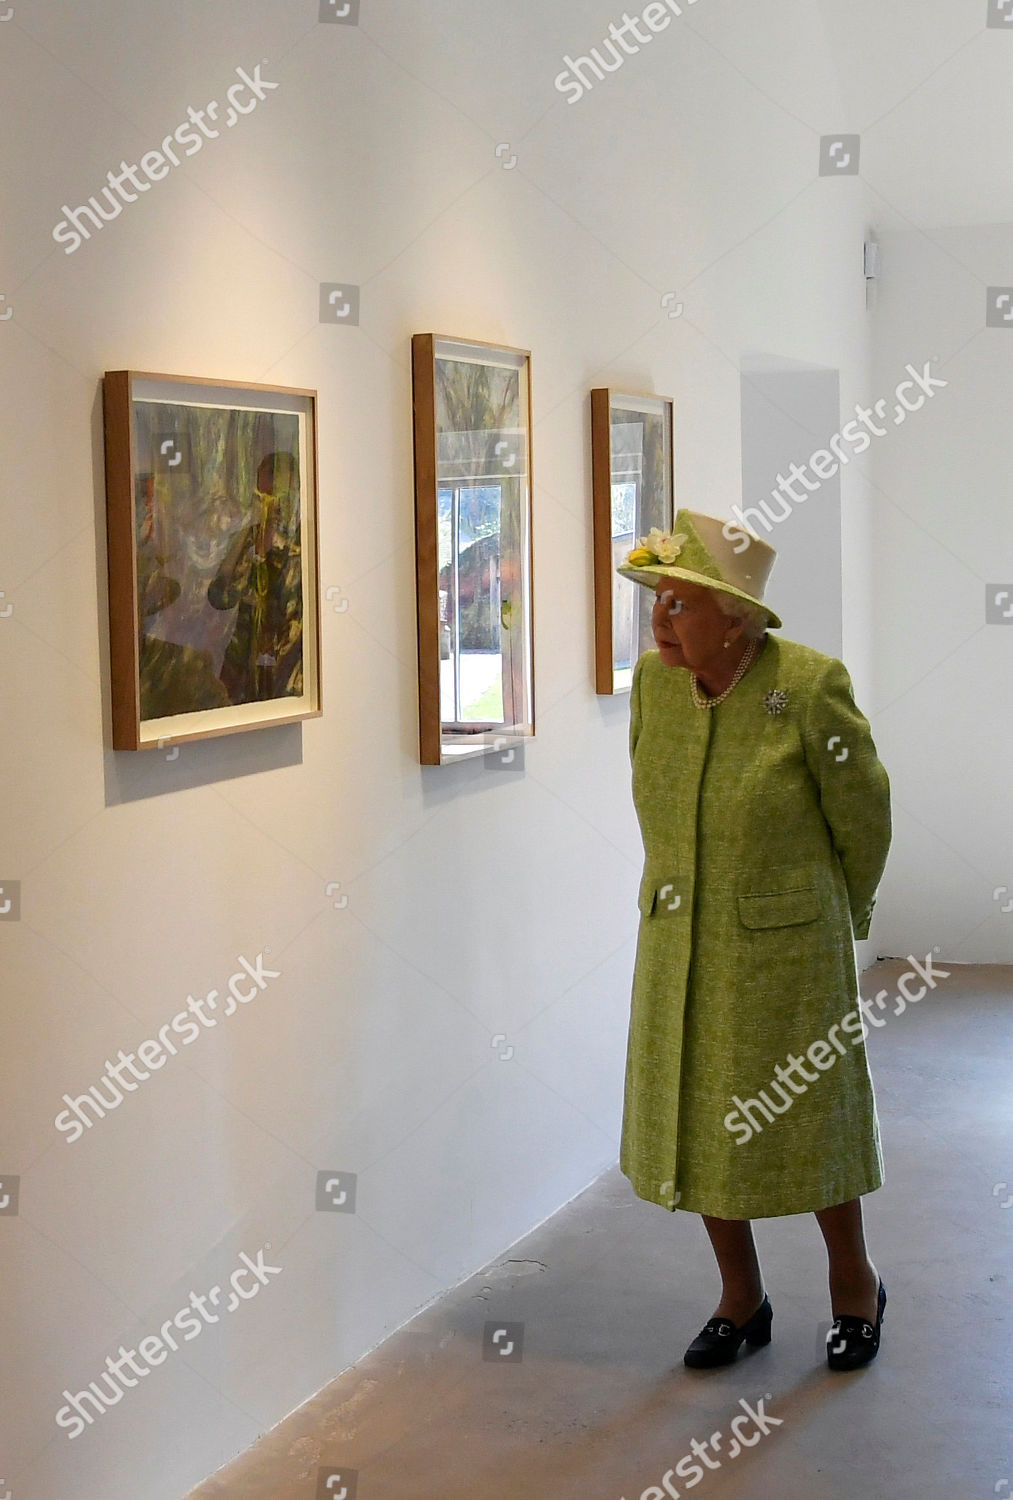 queen-elizabeth-visit-to-somerset-uk-shutterstock-editorial-10180760f.jpg